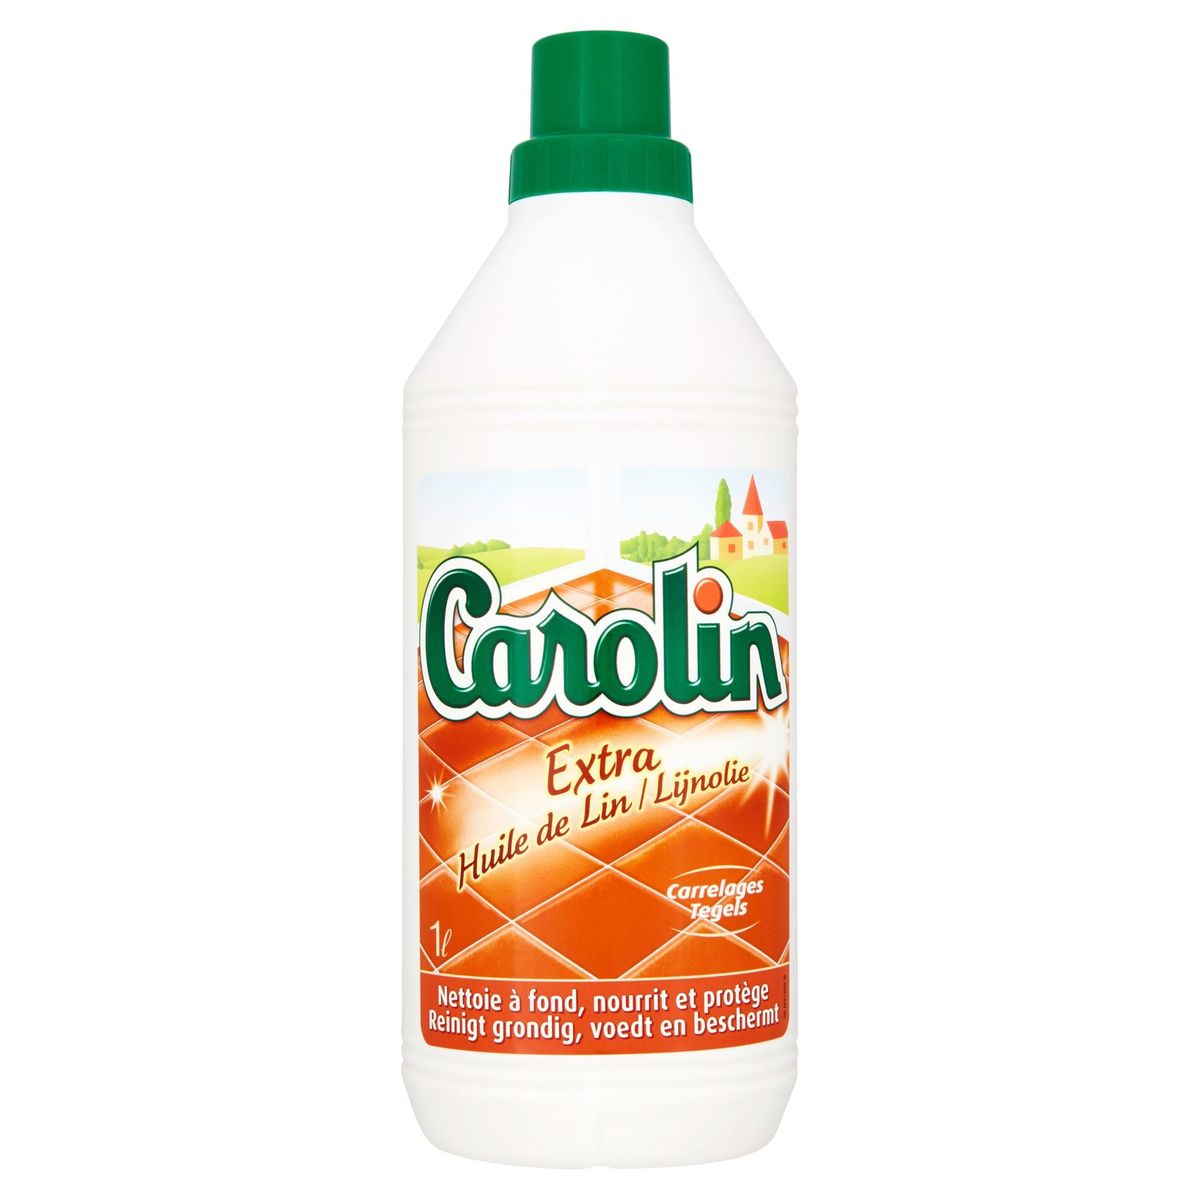 Carolin Extra huile de lin carrelages 1 L